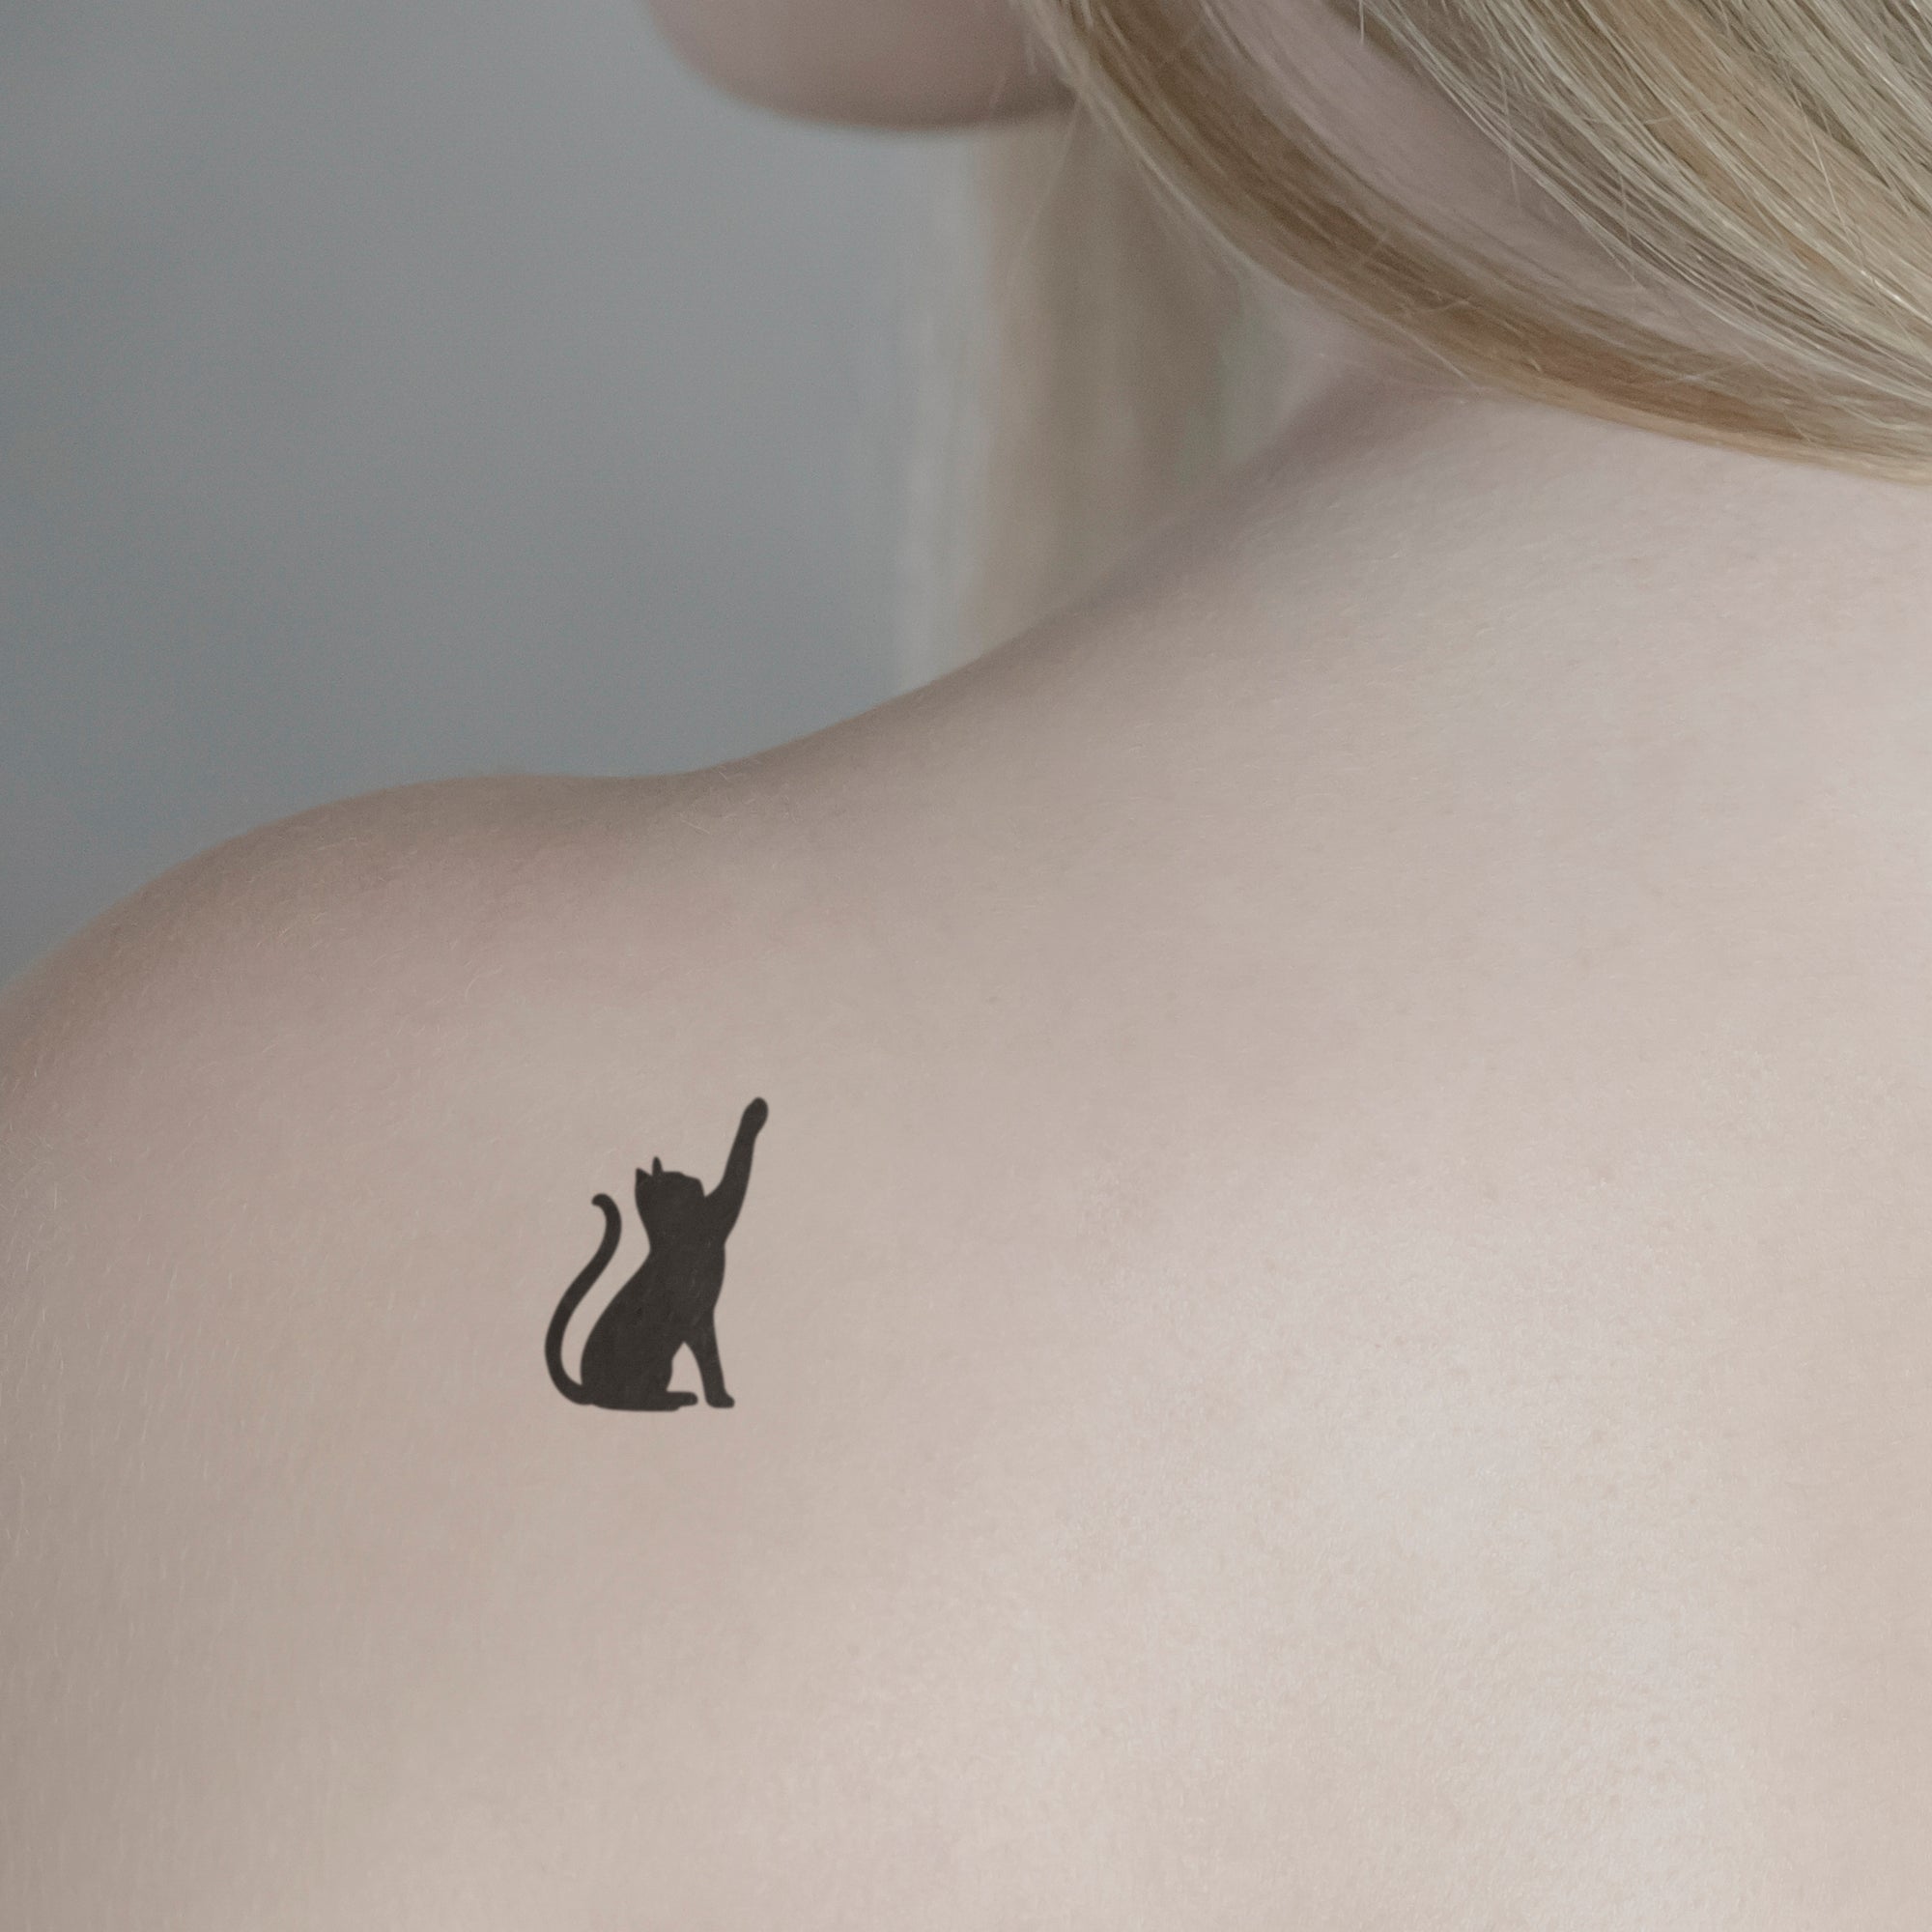 Katze ausgefüllt Tattoo von minink, der Marke für temporäre Tattoos.